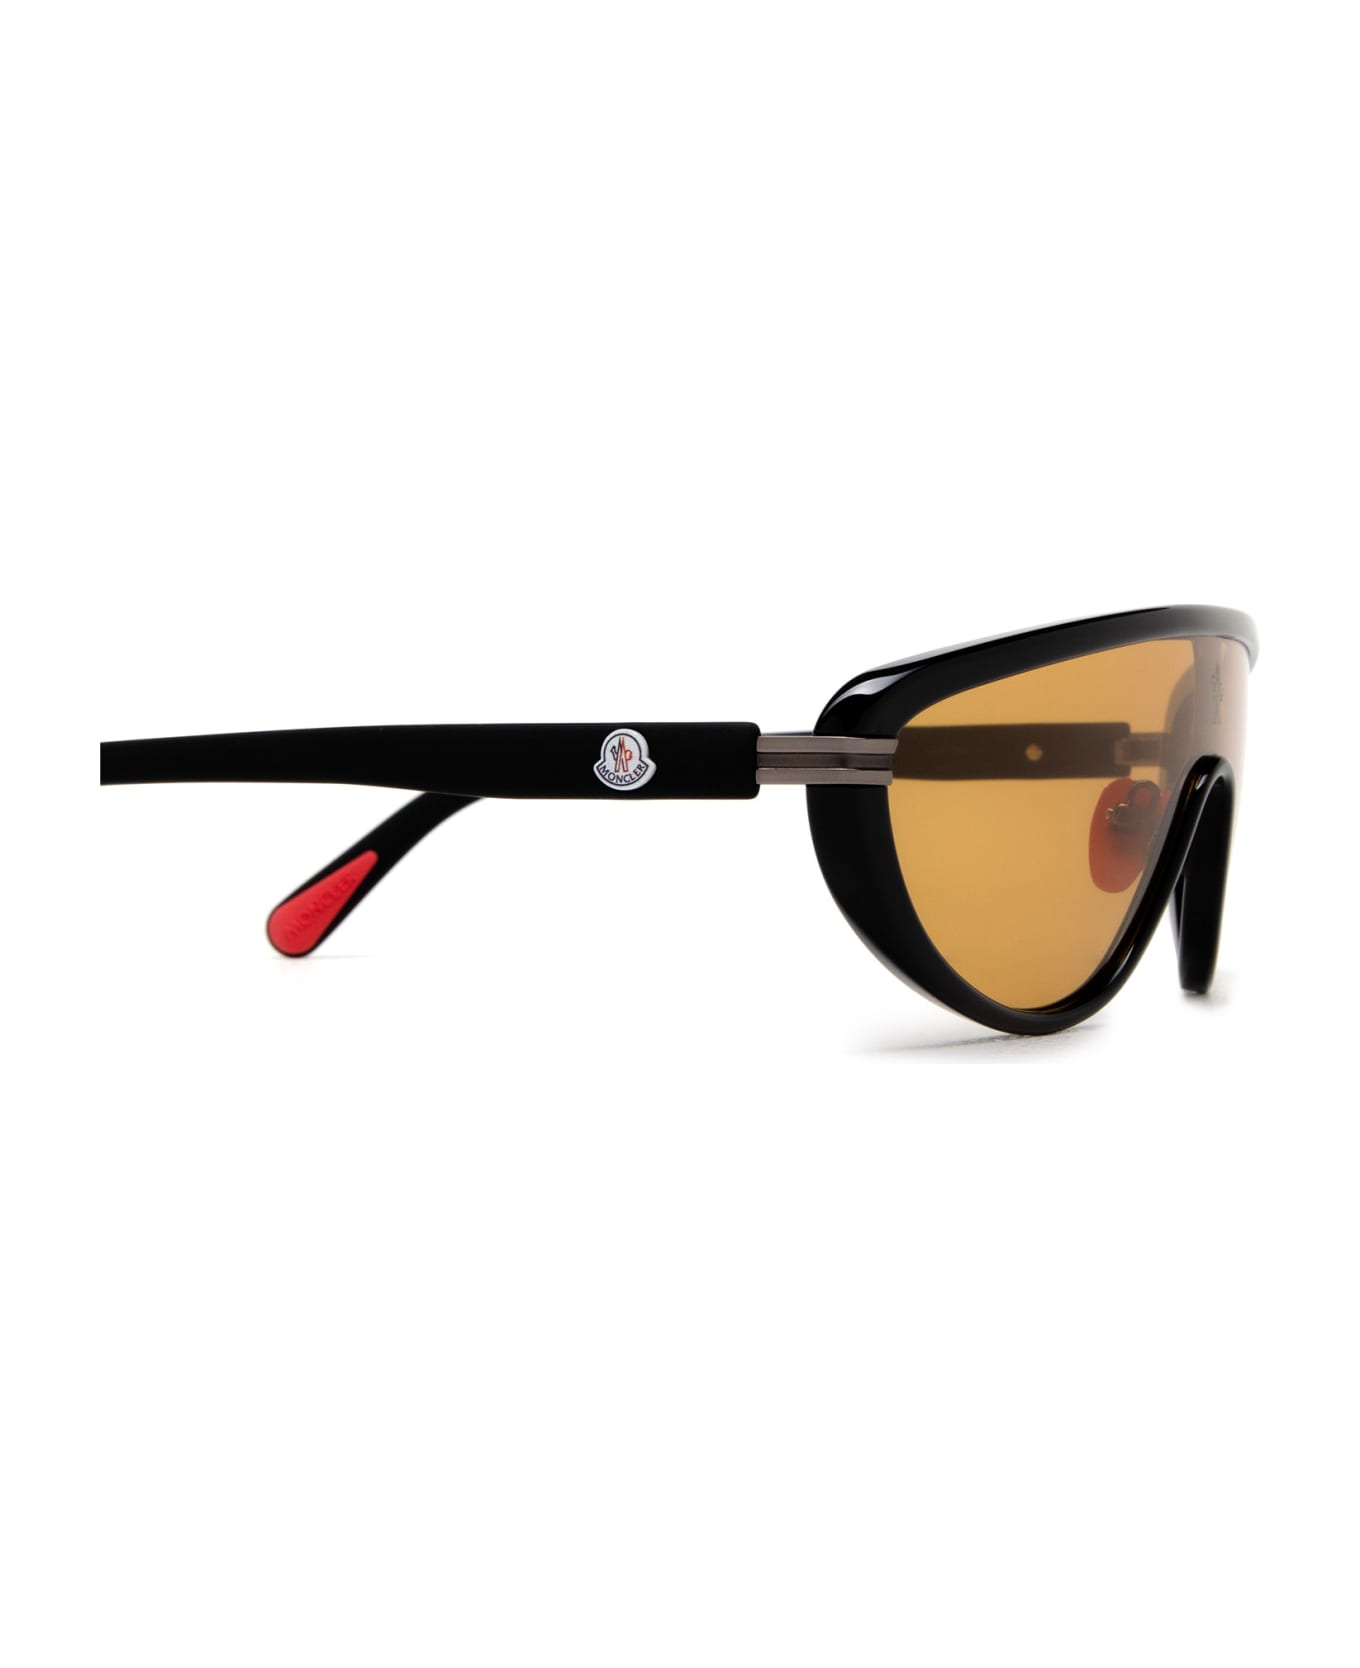 Moncler Eyewear Ml0239 Shiny Black Sunglasses - Shiny Black